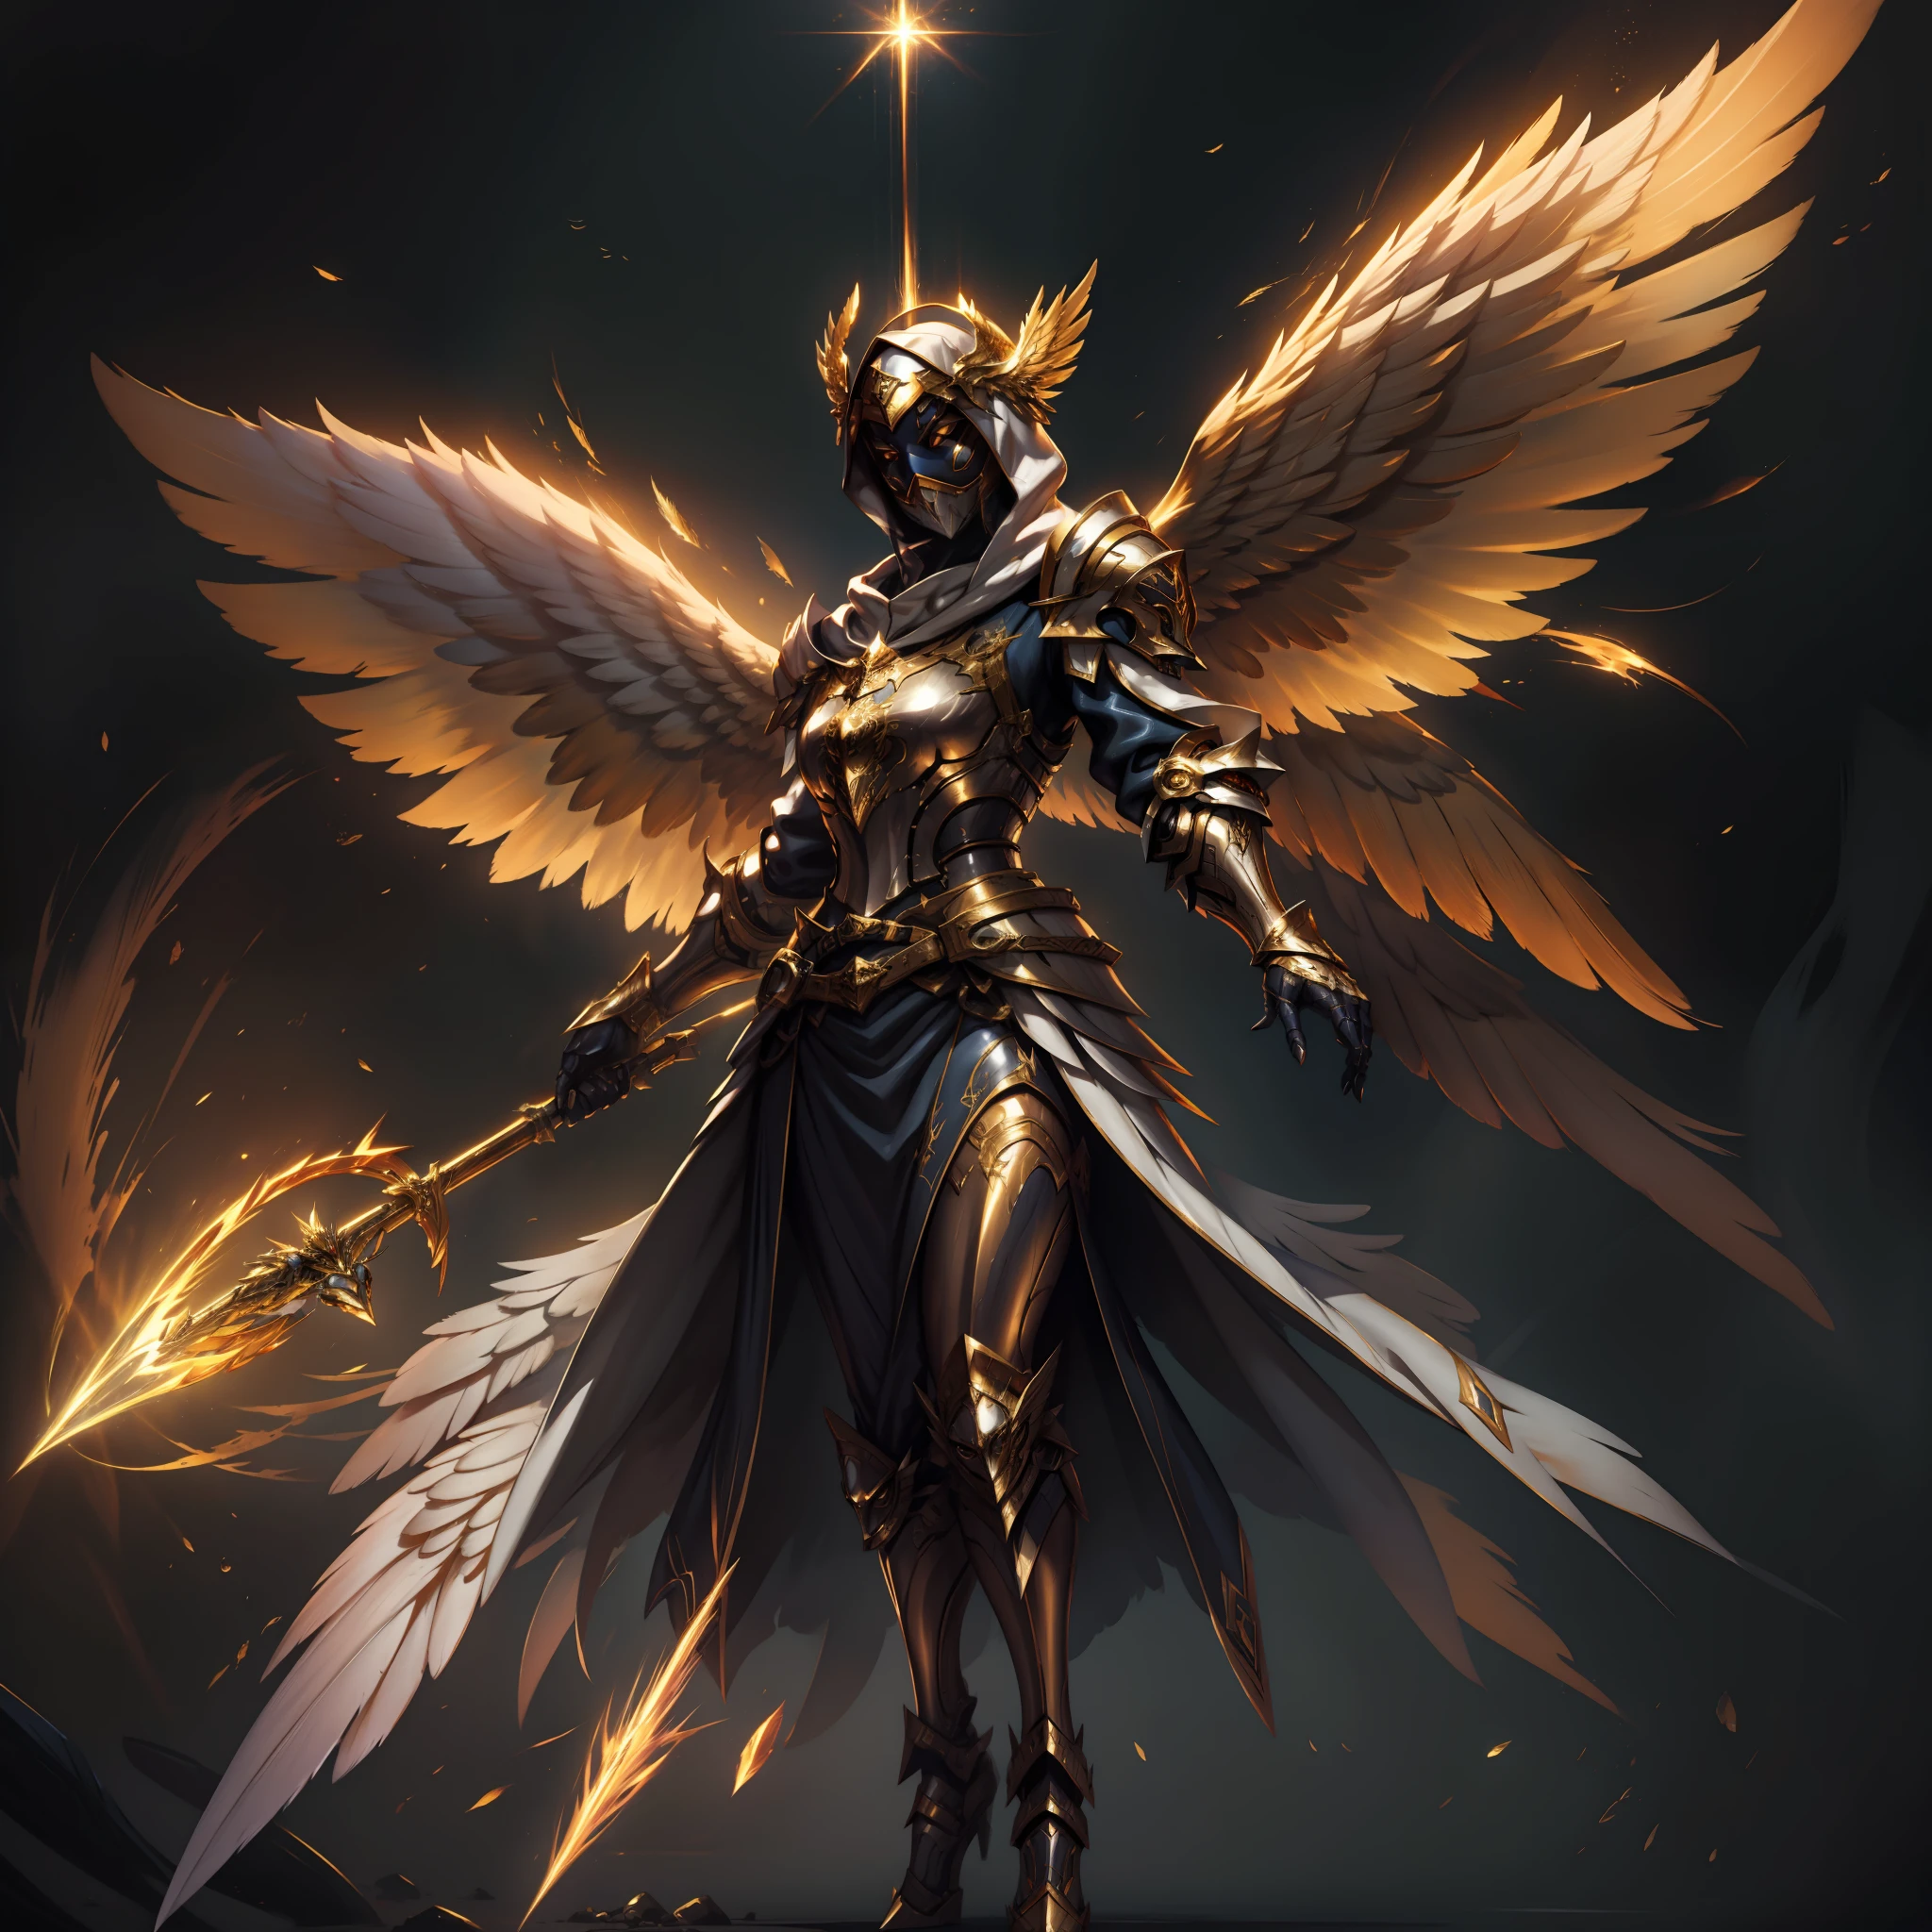 金甲天使, 由能量構成的翅膀, 金屬你好, 没有脸, 连帽的, 金子, 幻想, 概念藝術, 超現實, 格雷格·魯特科斯基 (greg rutkowski) 的人物藝術